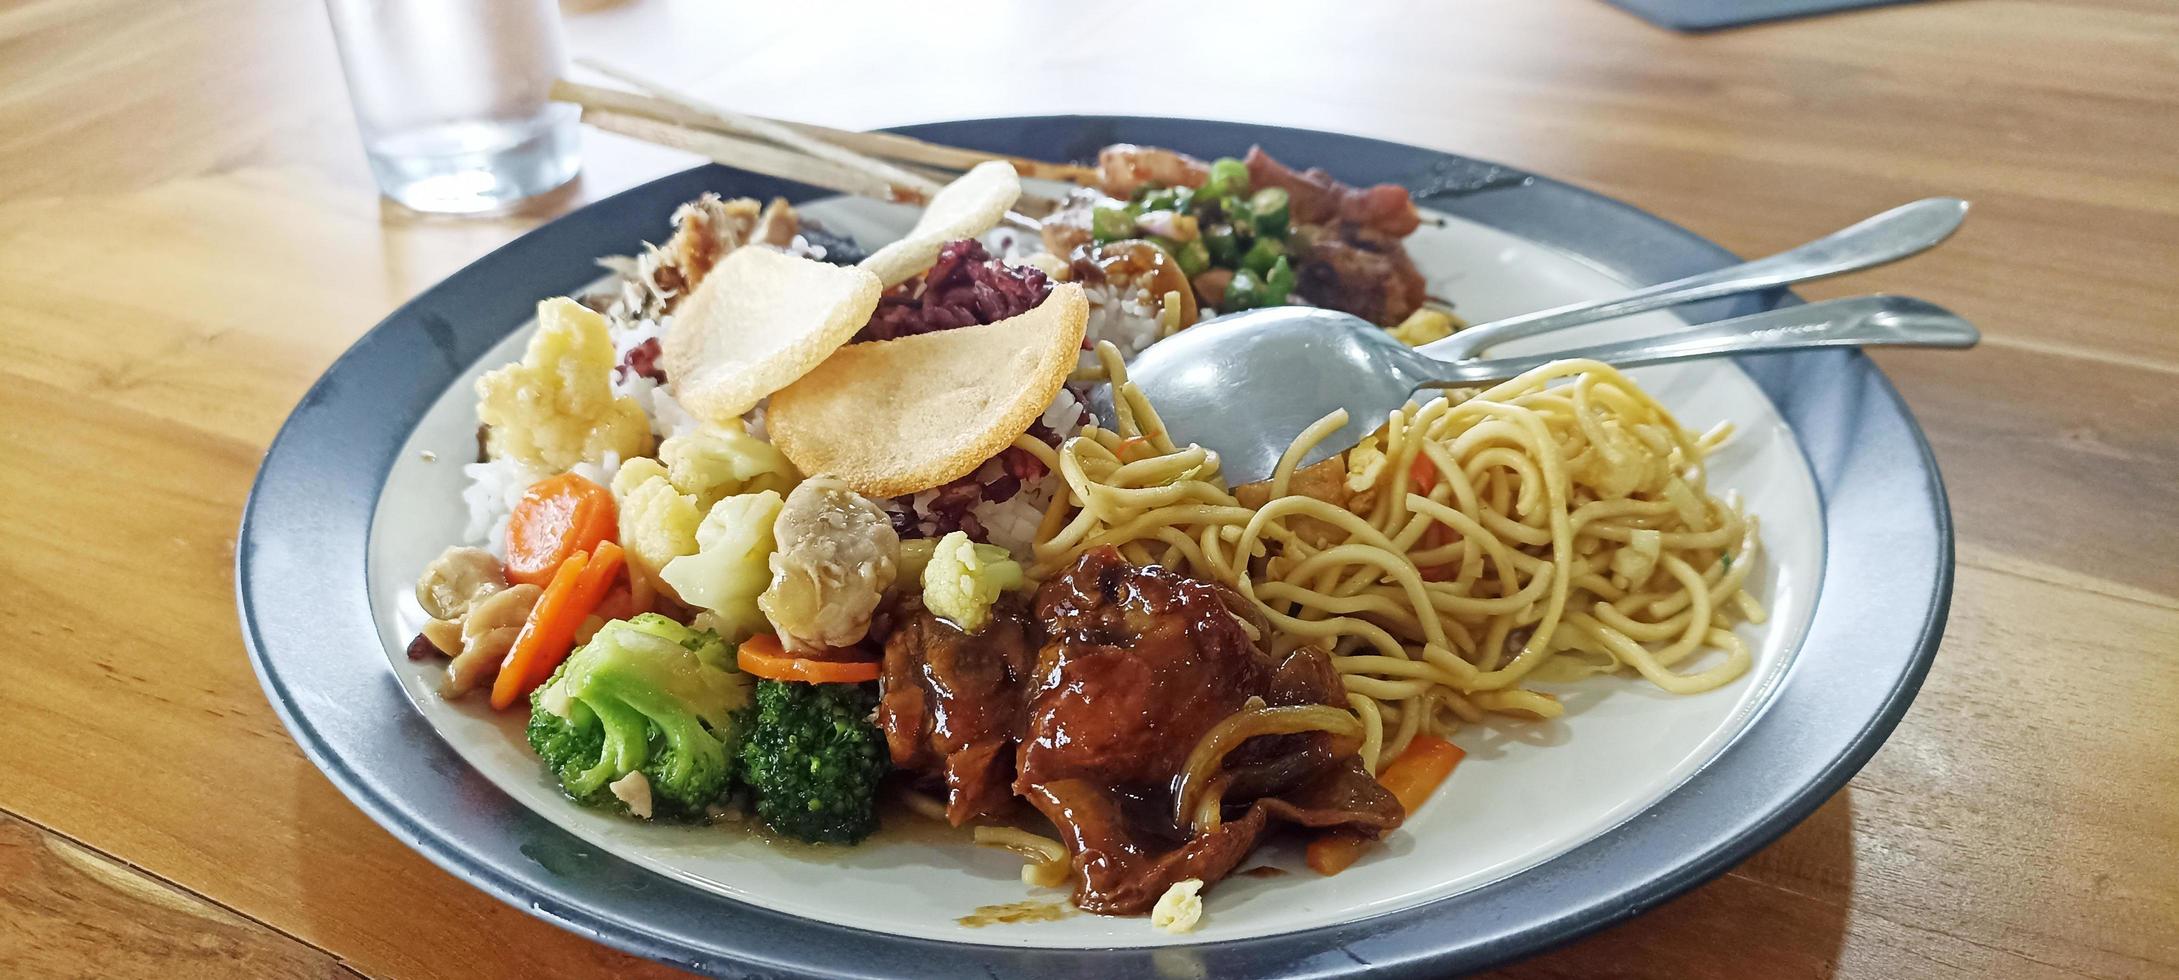 rijst- schotel met kant gerechten van kip, bloemkool, broccoli, noedels en crackers in een bord foto